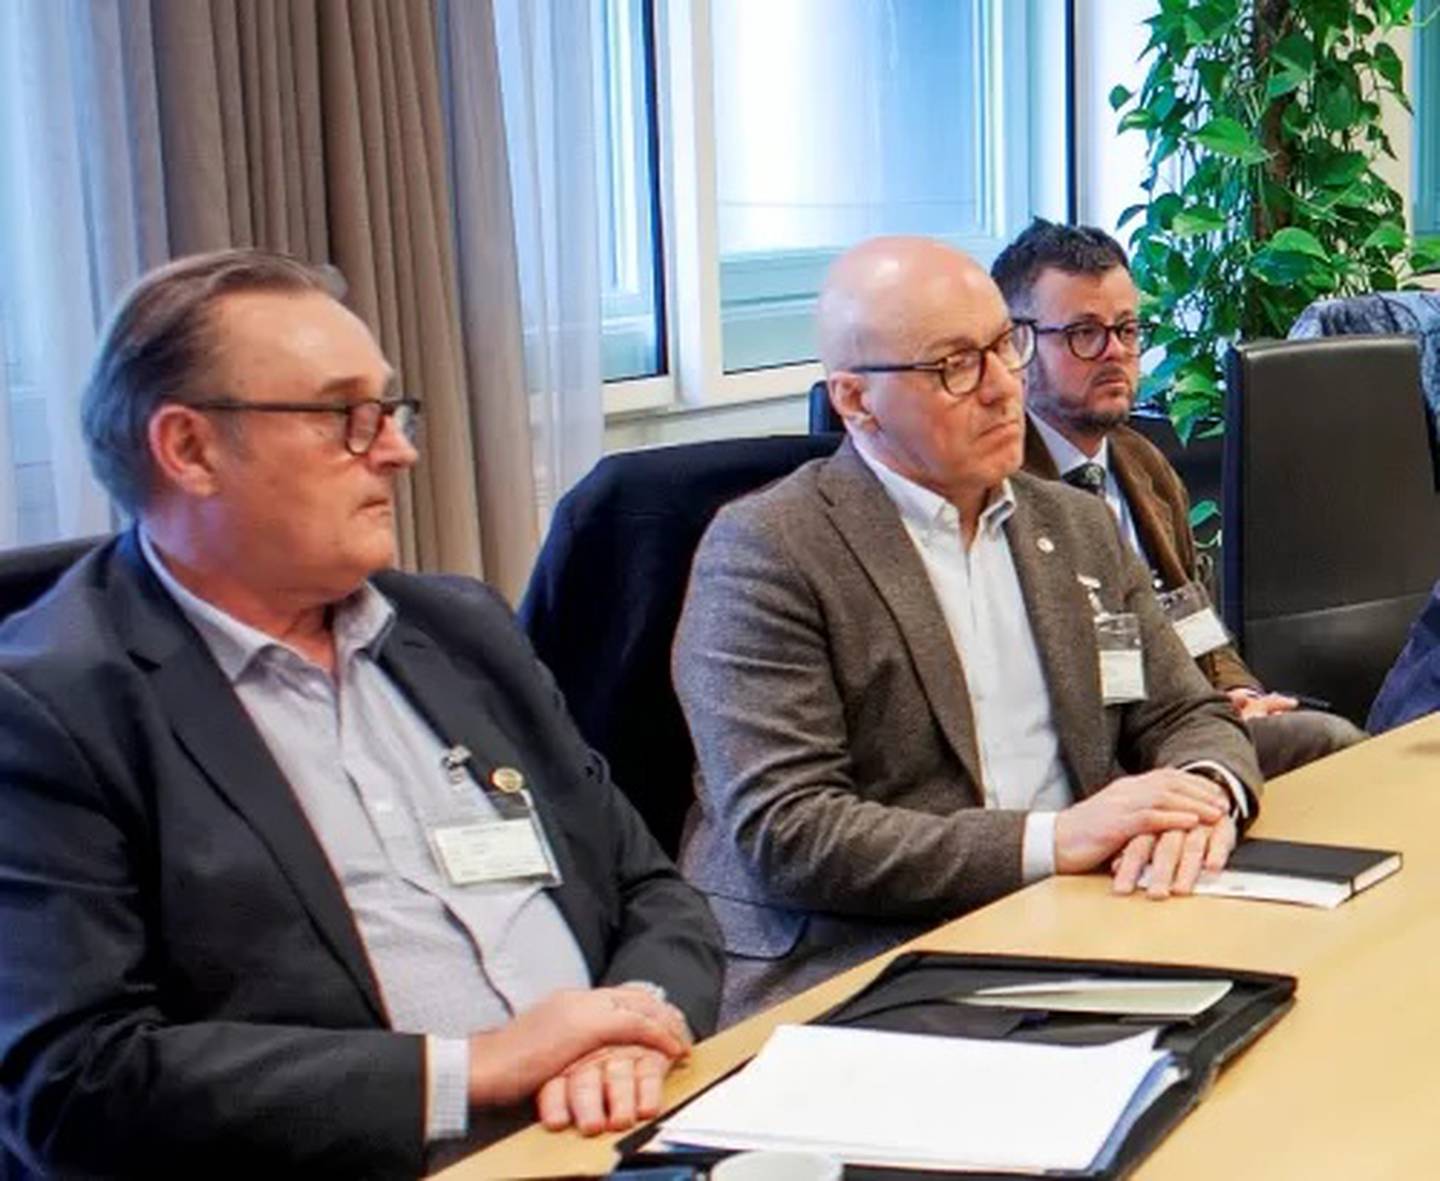 NSF-leder Kurt Inge Angell (i midten) er kritisk til forslaget til ny kriselov. Til venstre Hans Sande fra Sjøoffisersforbundet og til høyre rådgiver Stian Grøthe.